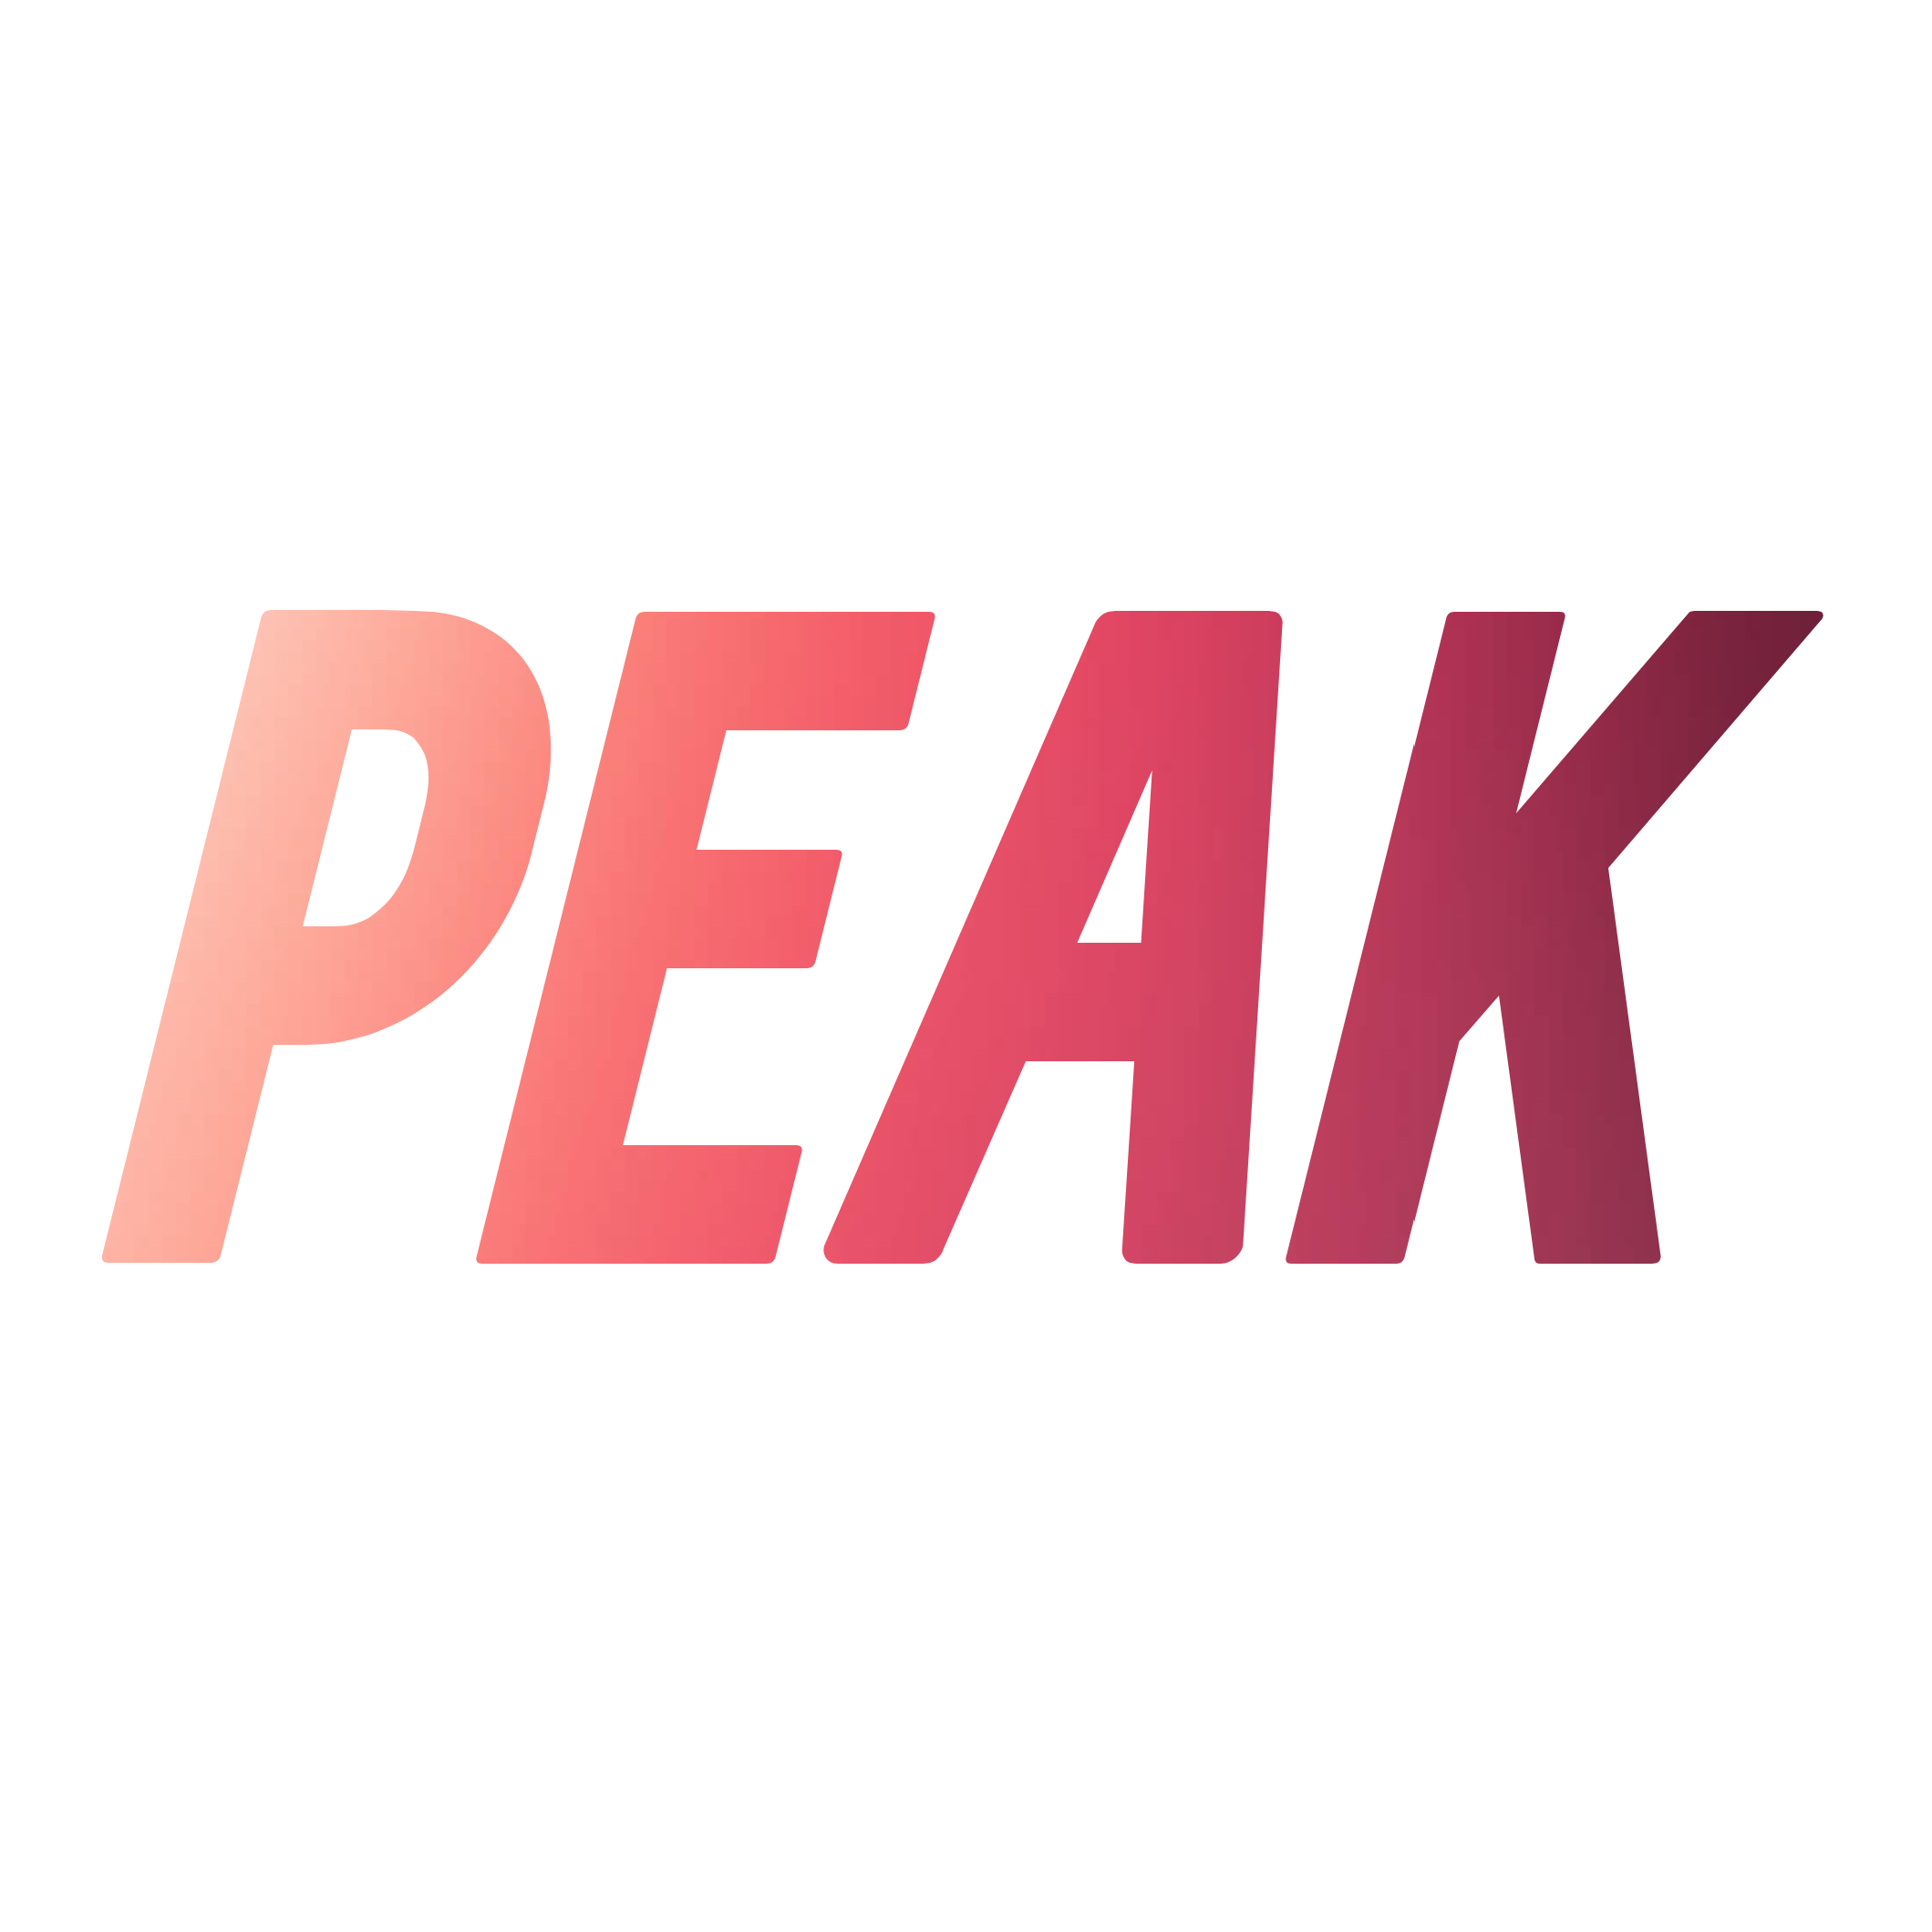 peak